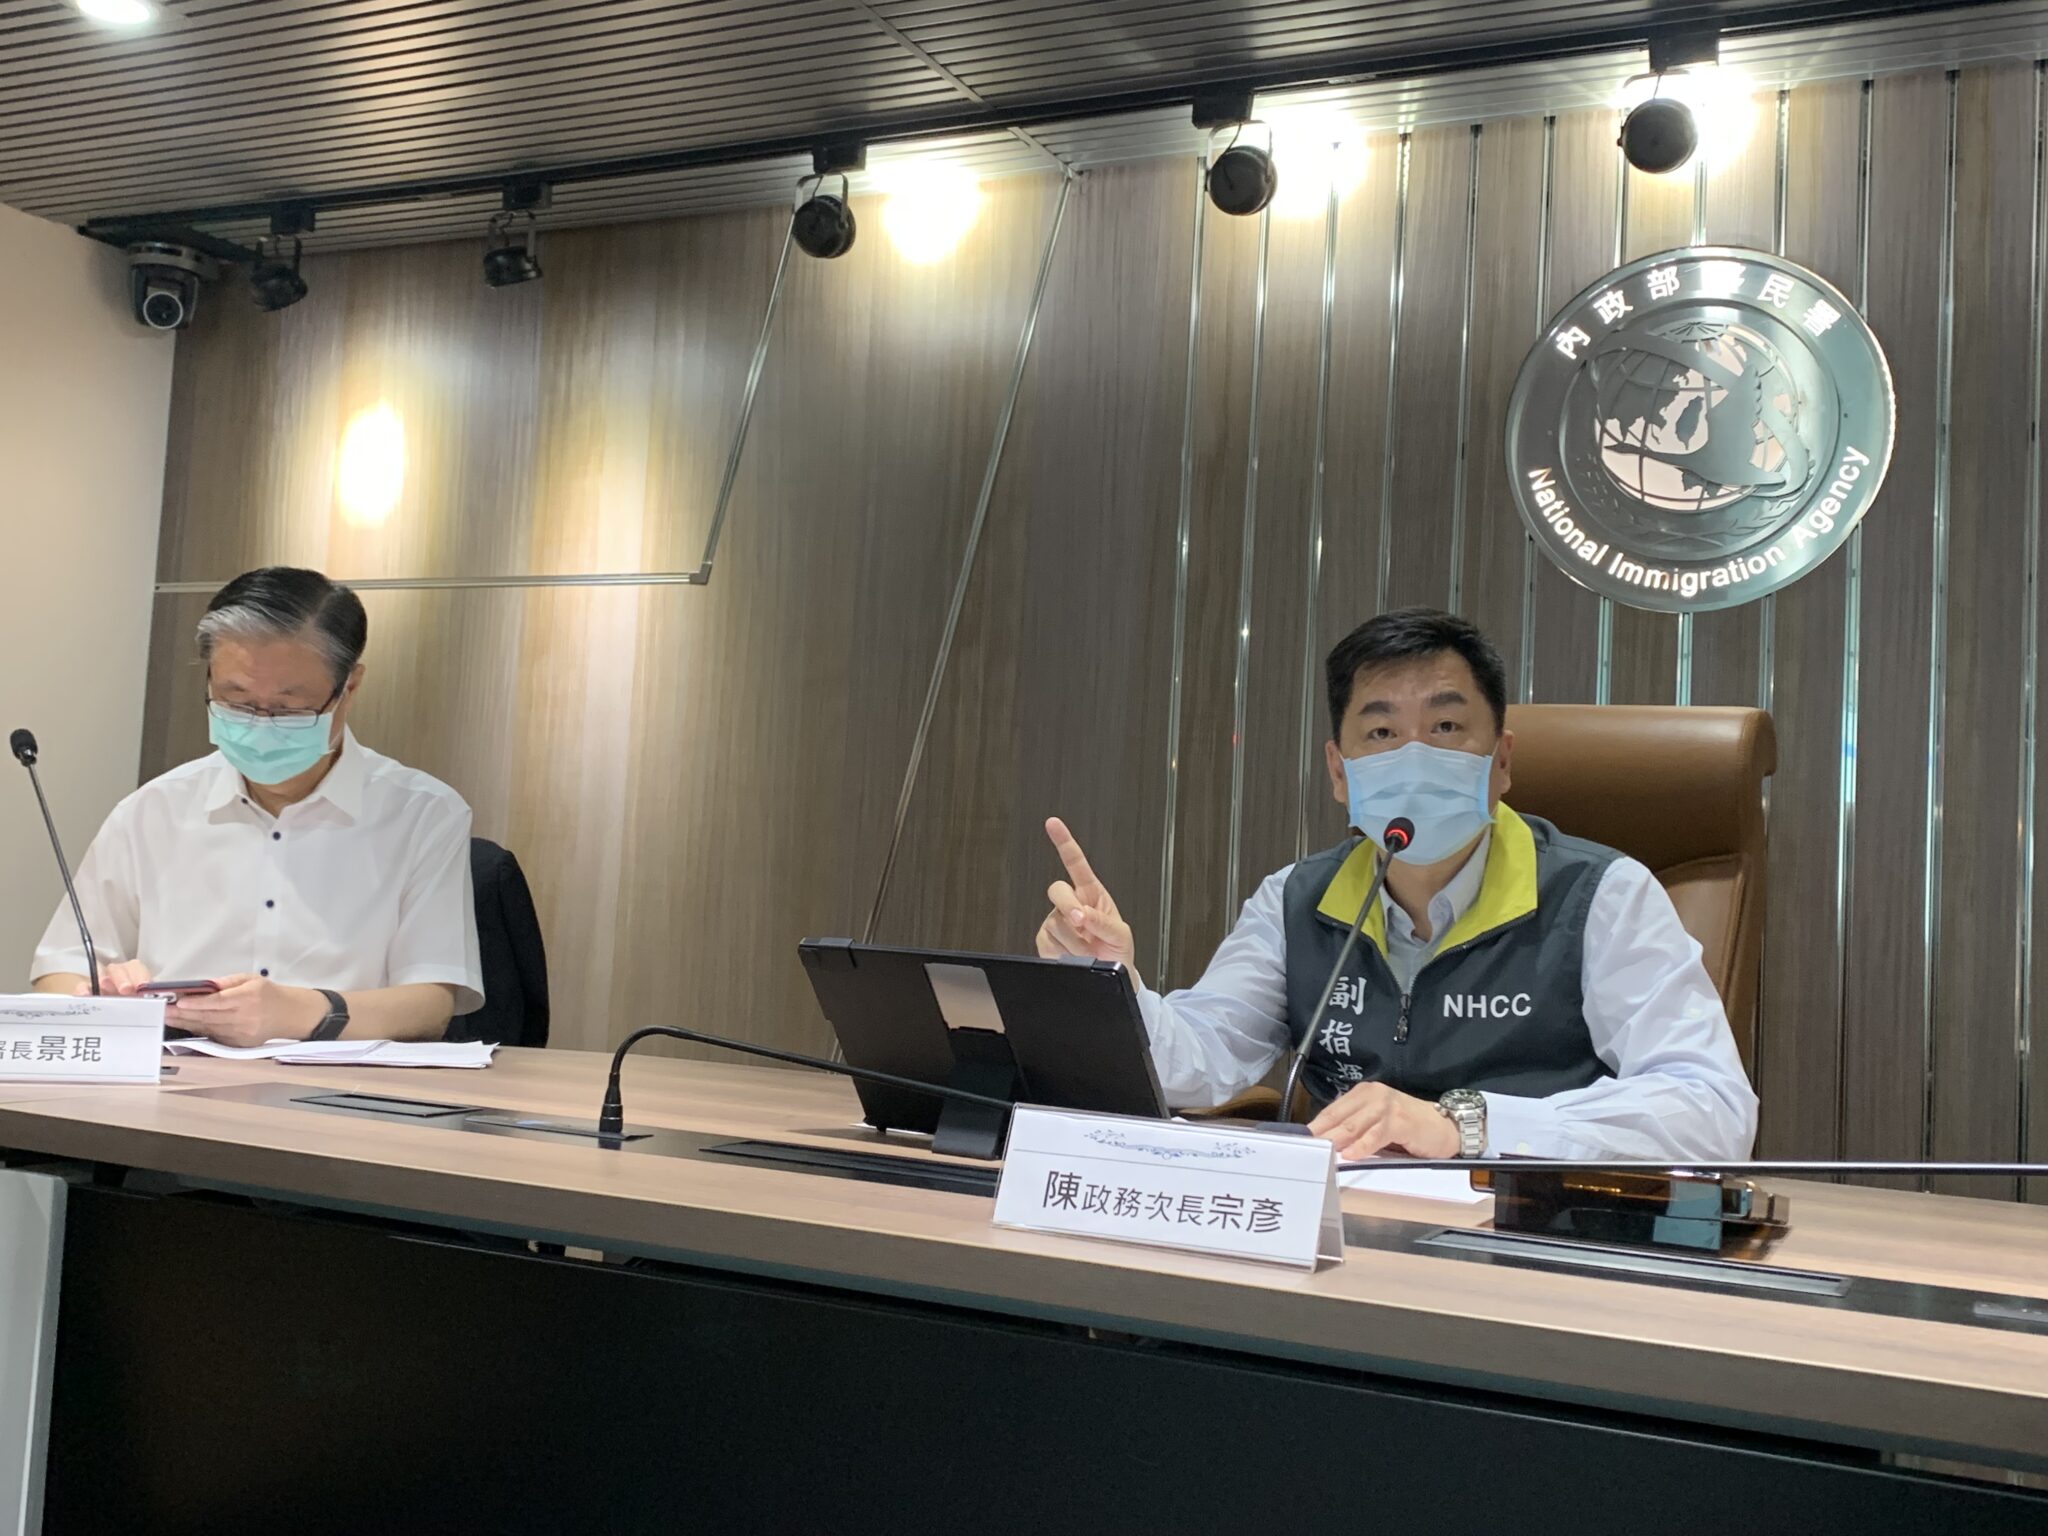 Sở Di dân và Sở Cảnh sát kêu gọi người nước ngoài bất hợp pháp tại Đài Loan đi xét nghiệm sàng lọc nếu có triệu chứng khả nghi